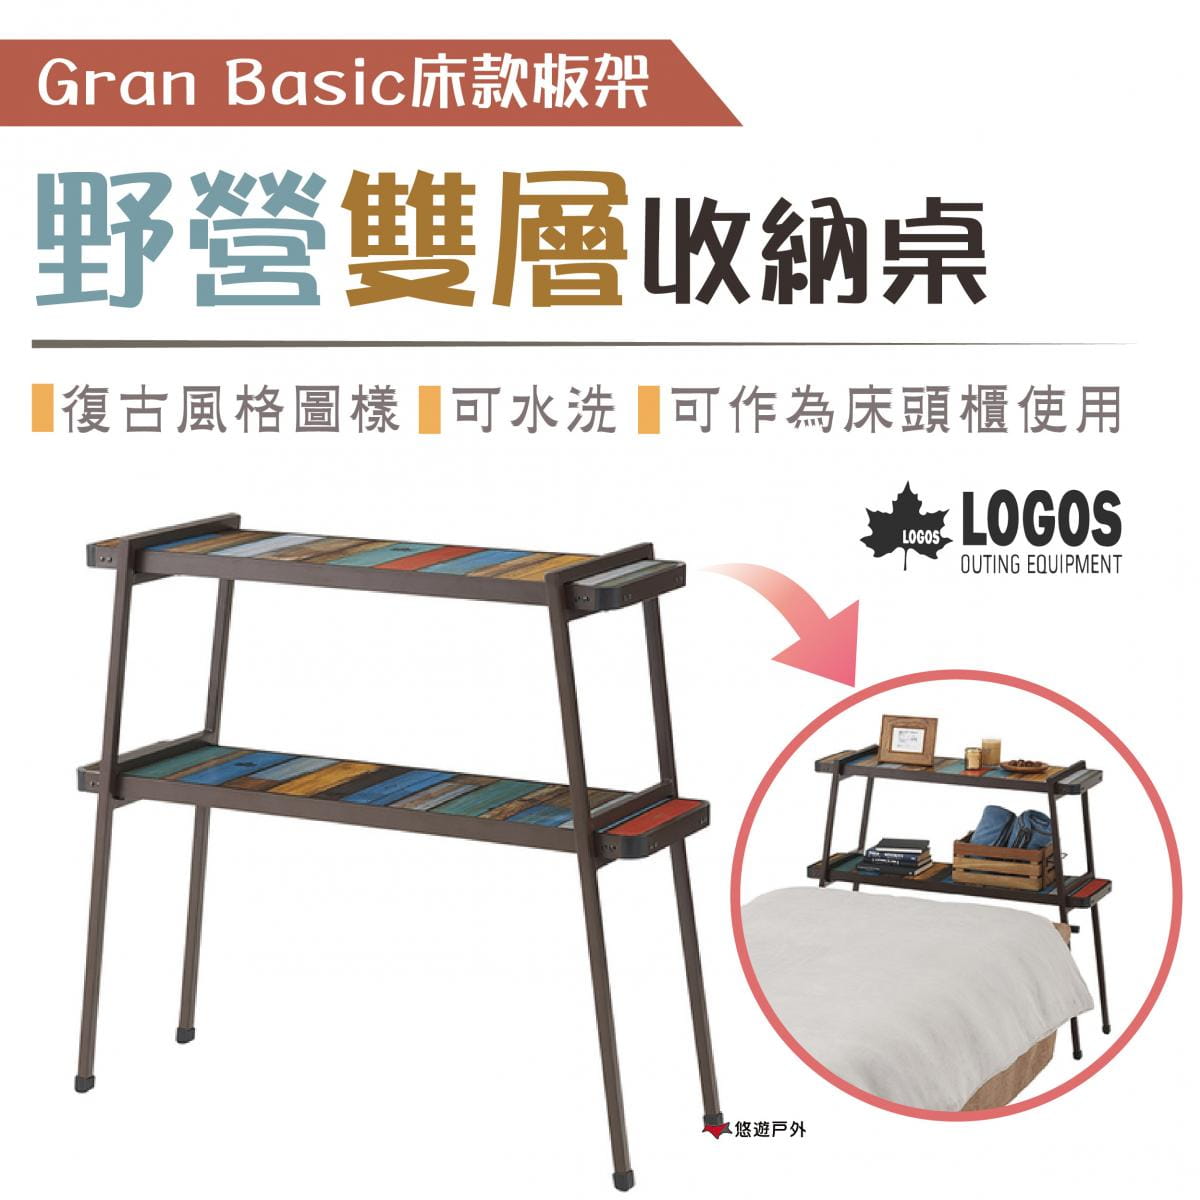 【日本LOGOS】G/B野營雙層收納桌 Gran Basic床款板架 LG73200035 0